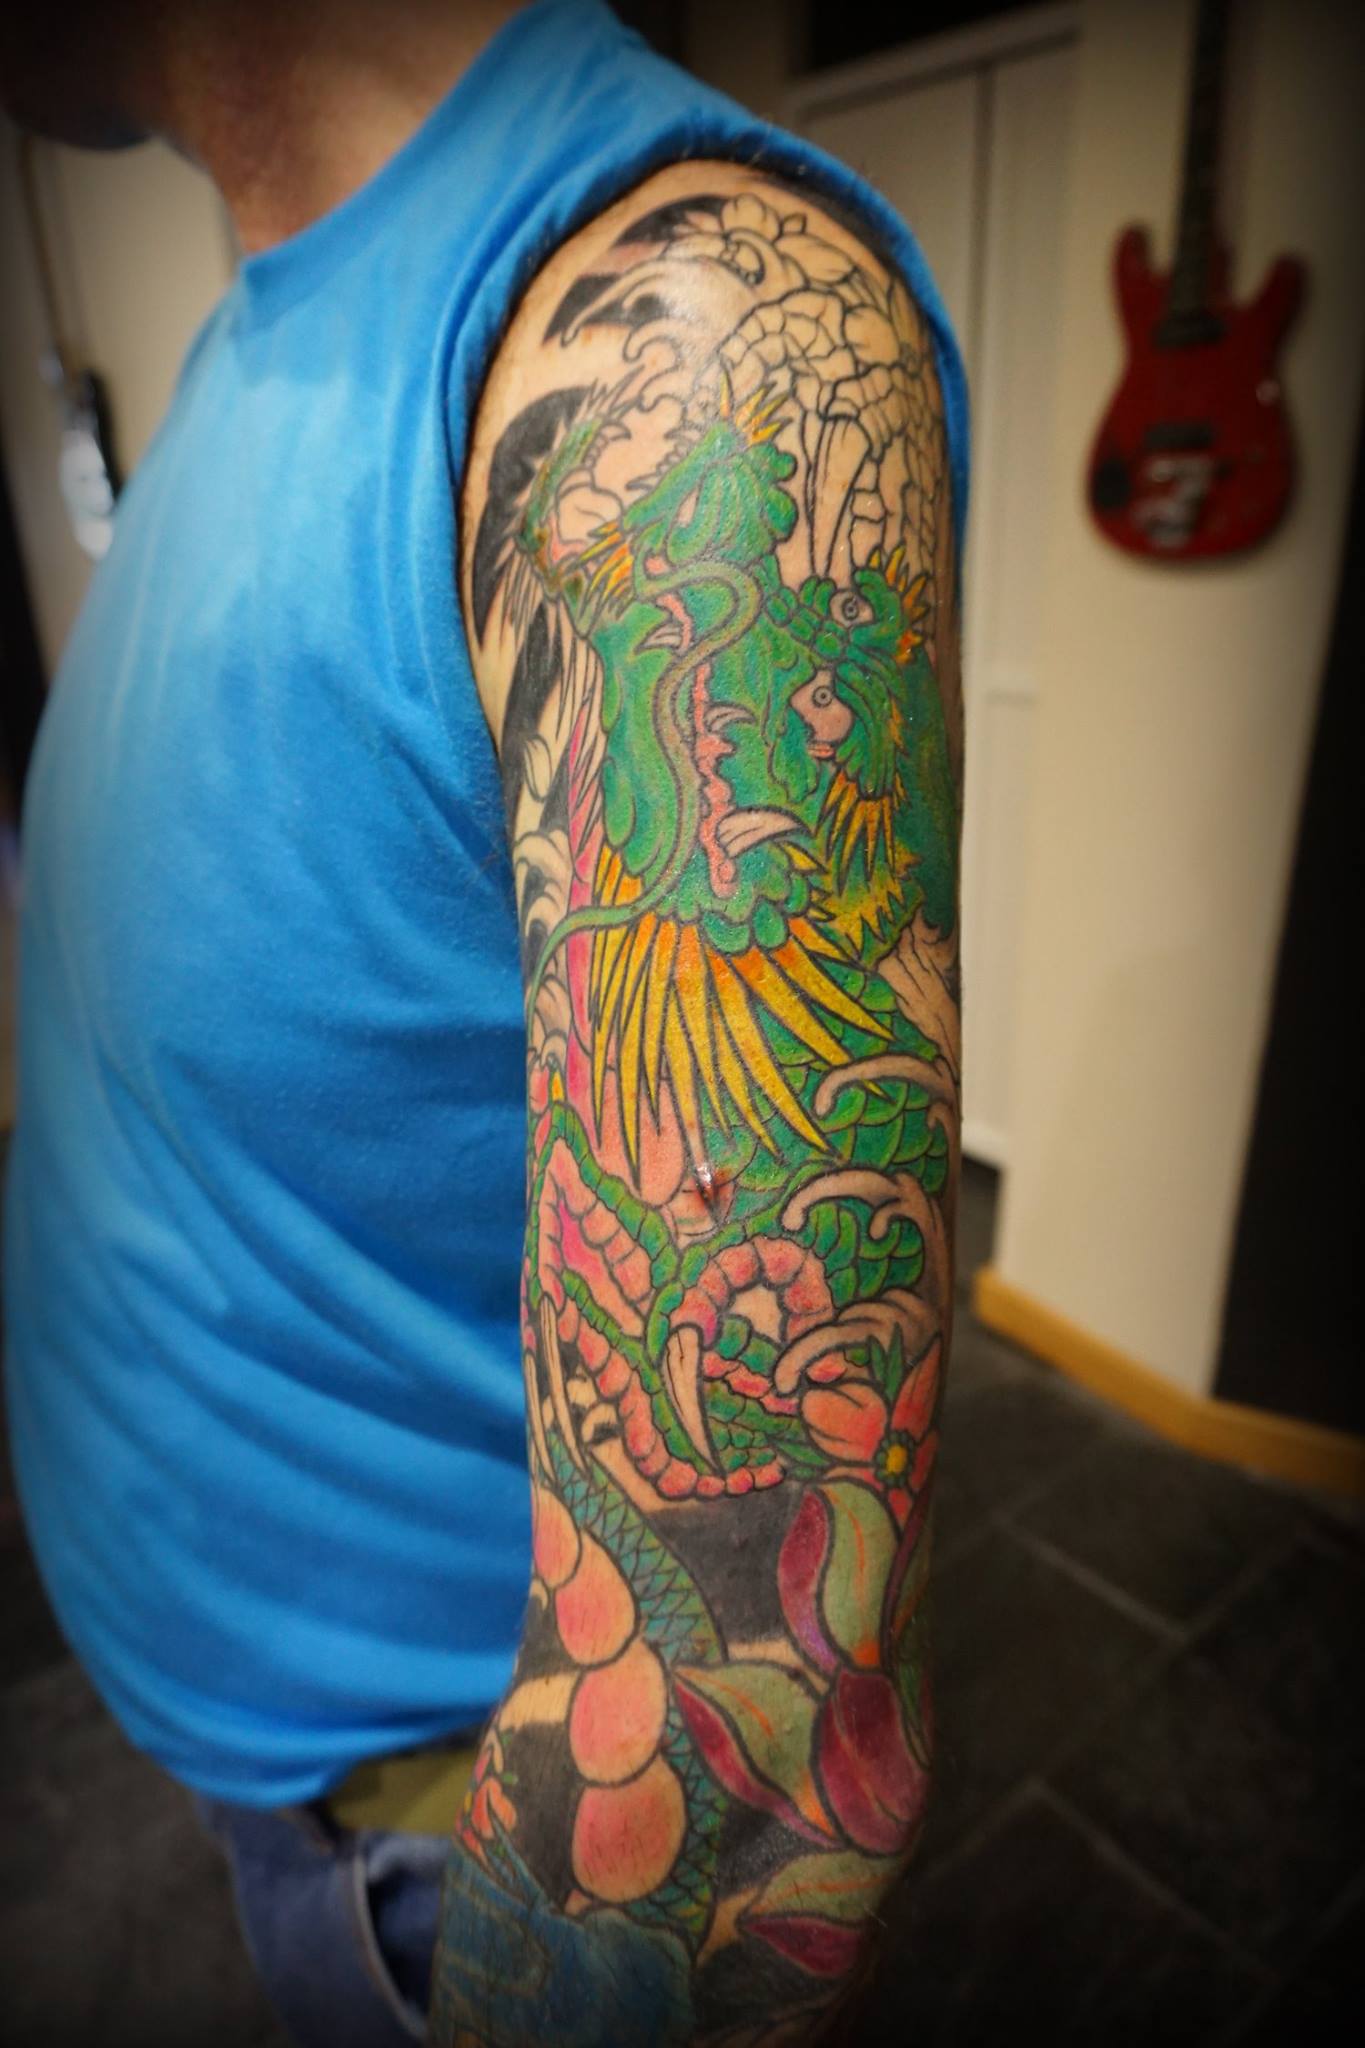 Tatuaje japonés de un dragón en el brazo - Tatuajes de Dragones